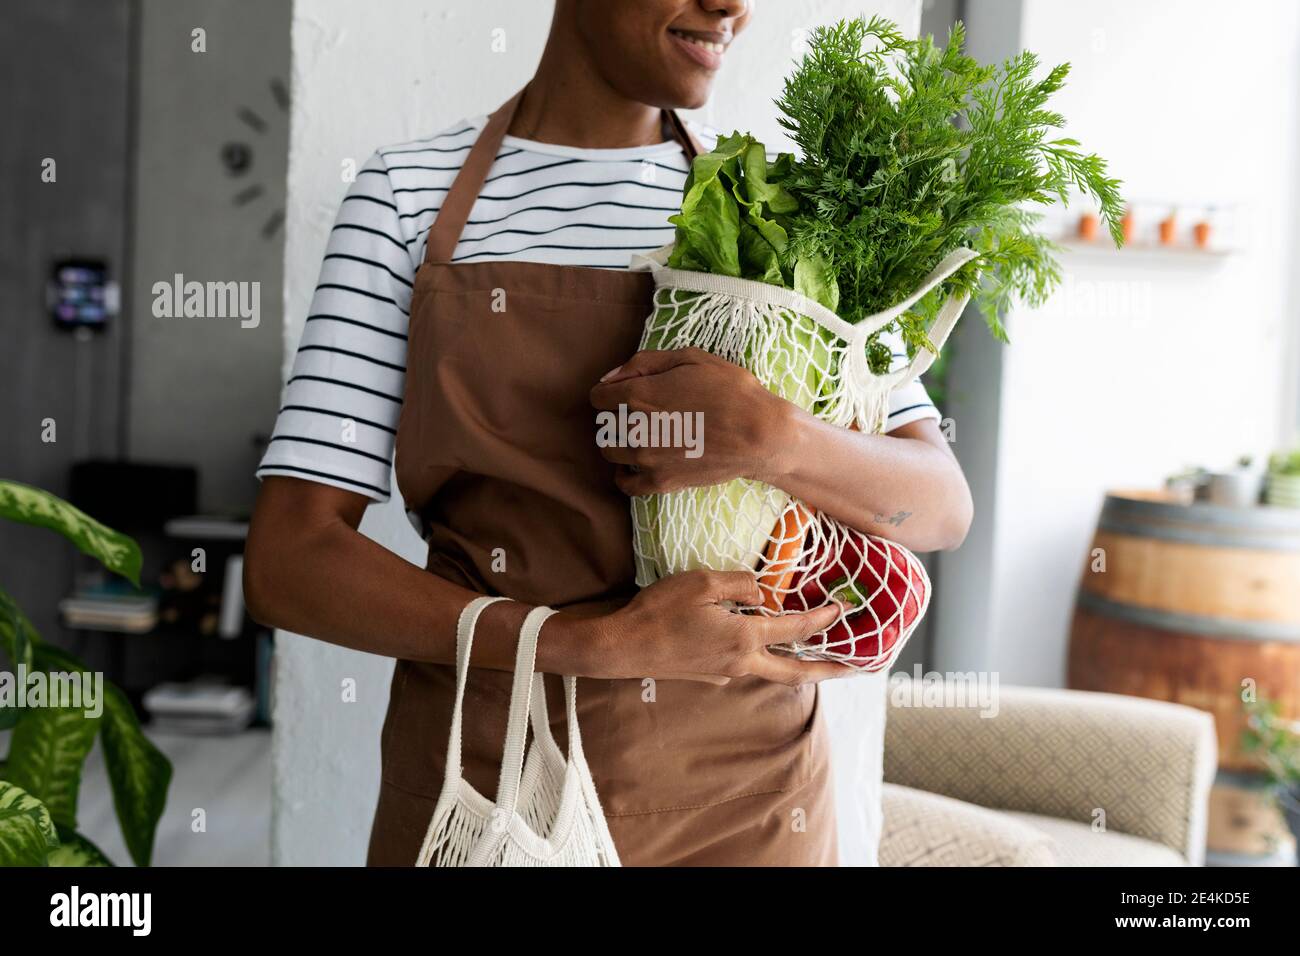 Hübsche Frau in Schürze, die Netz mit frischem Gemüse trägt Stockfoto